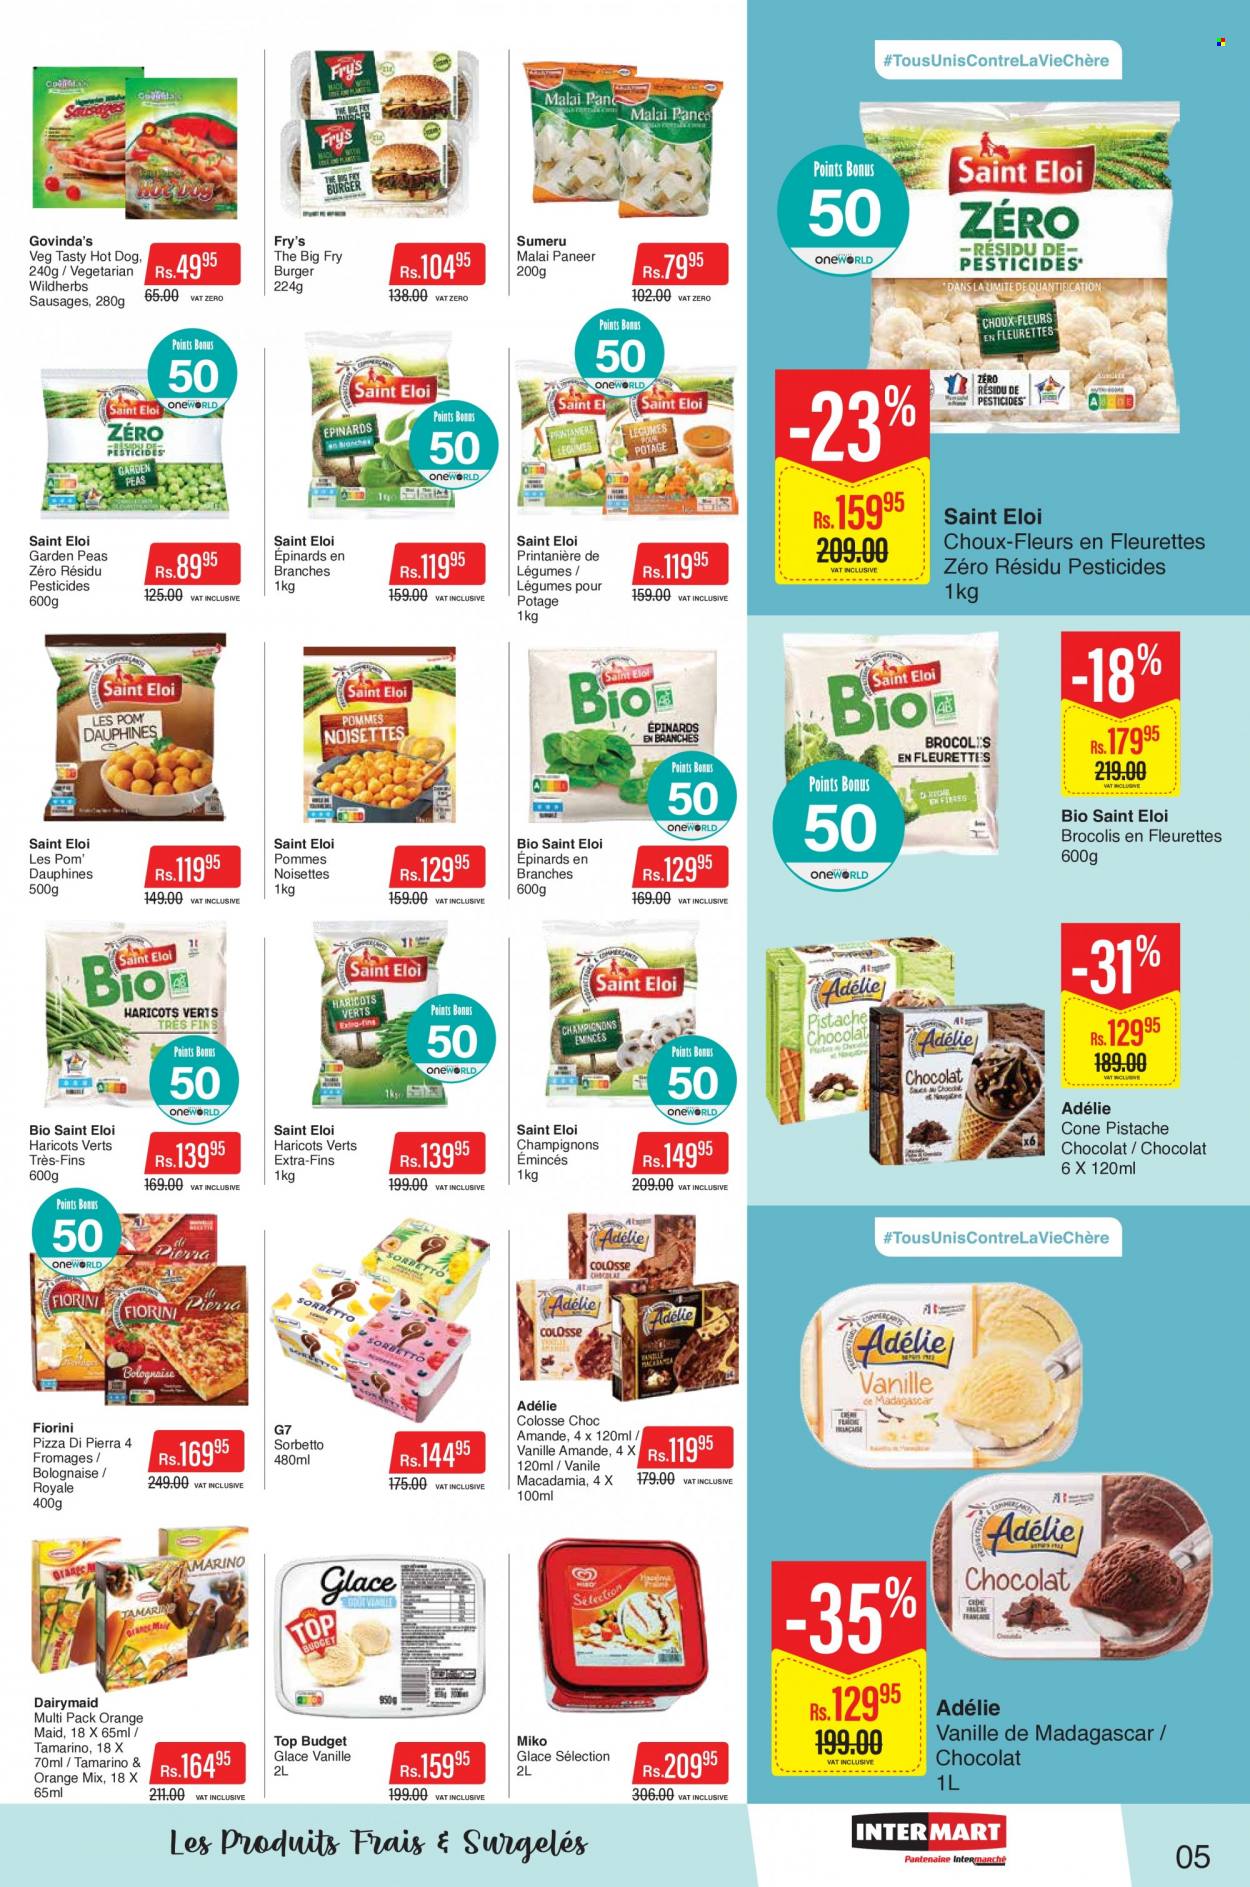 Intermart Catalogue - 9.09.2022 - 21.09.2022 - Sales products - peas, hot dog, pizza, hamburger, sausage, paneer, macadamia nuts. Page 5.